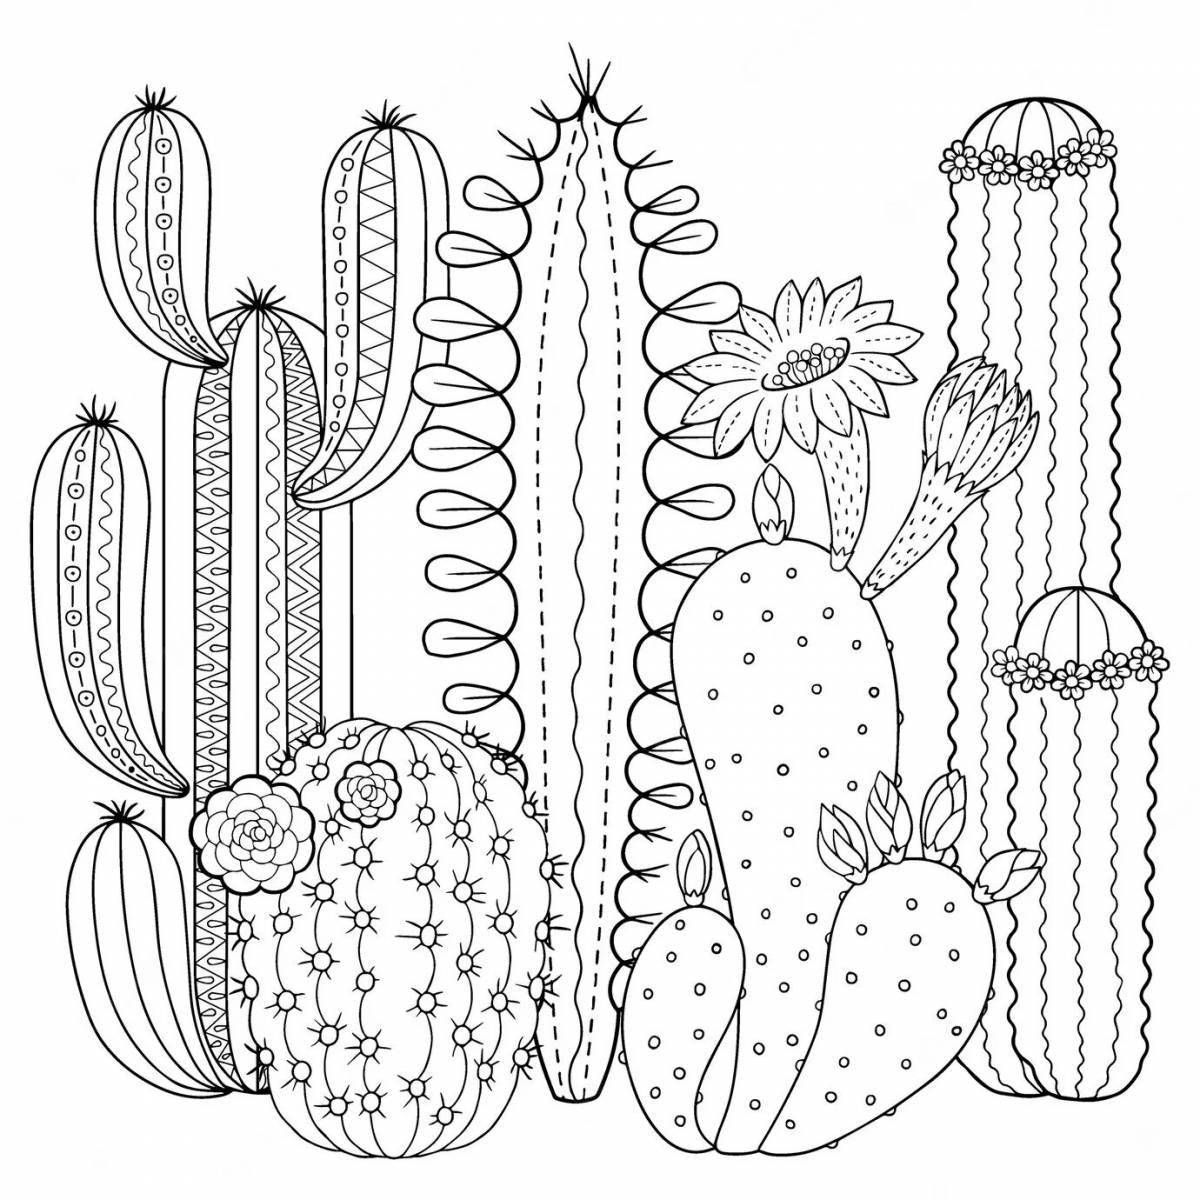 Coloring bright cactus